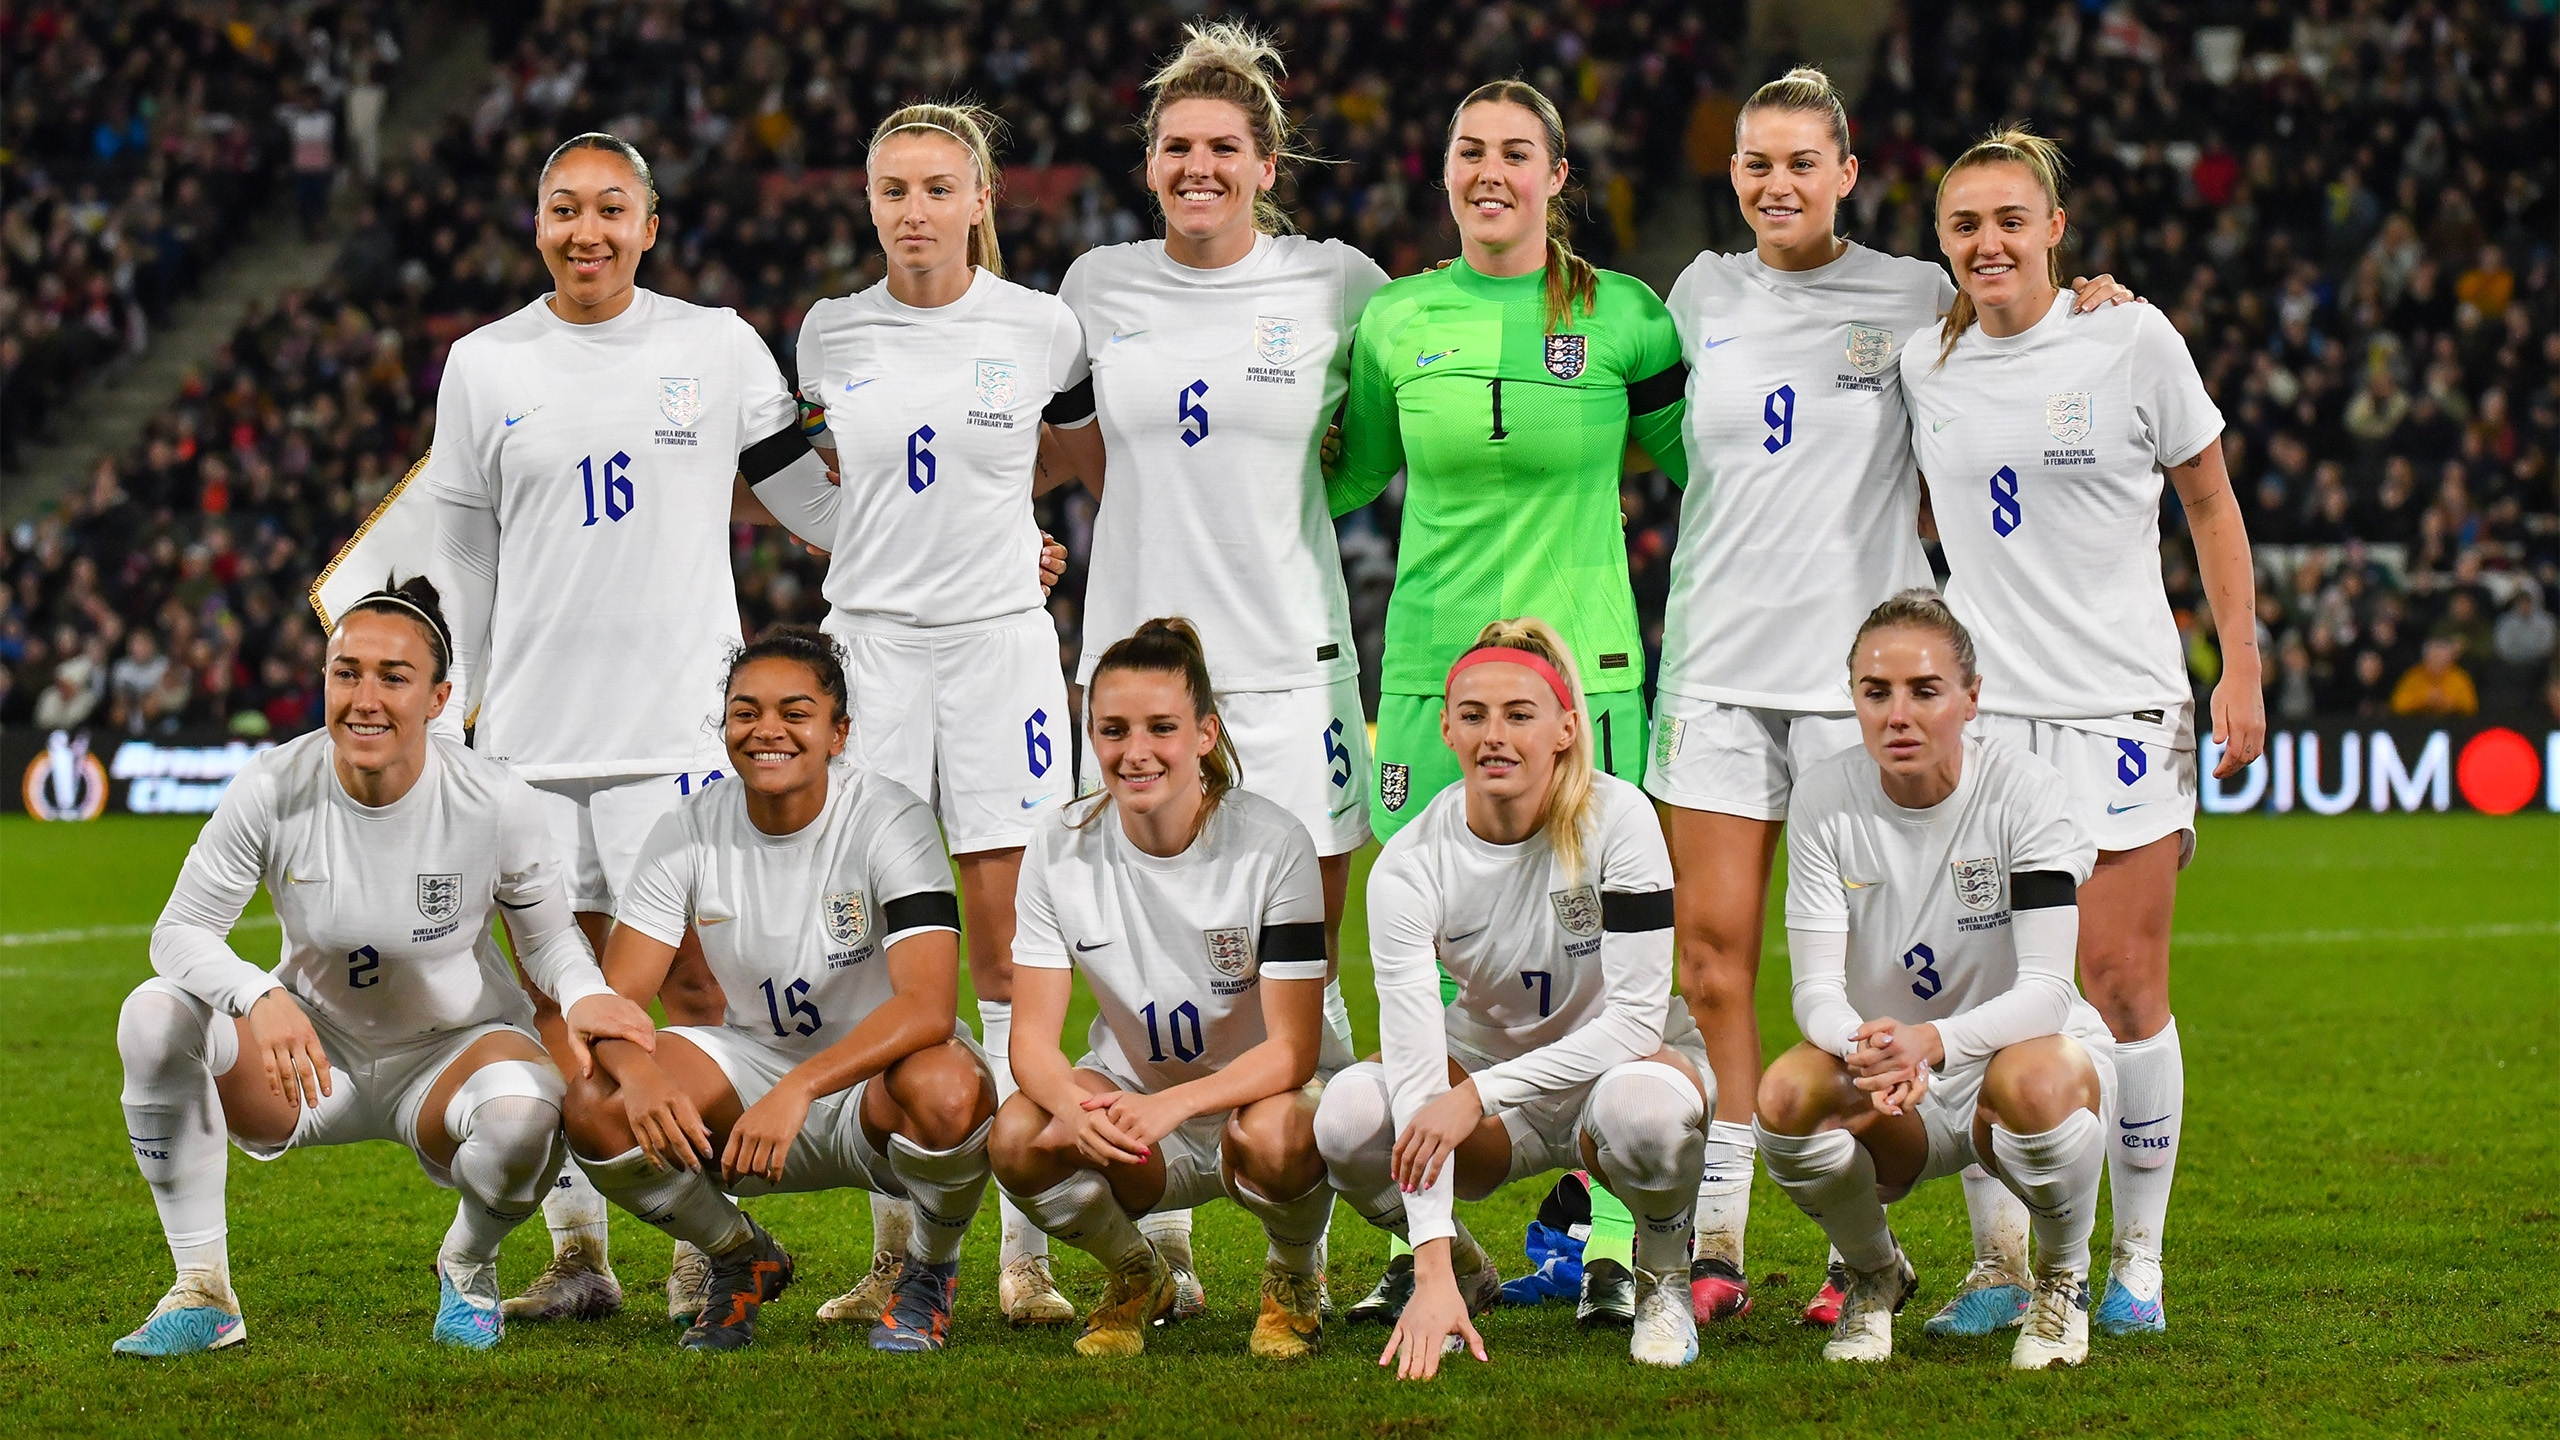 The Lionesses England team line-up